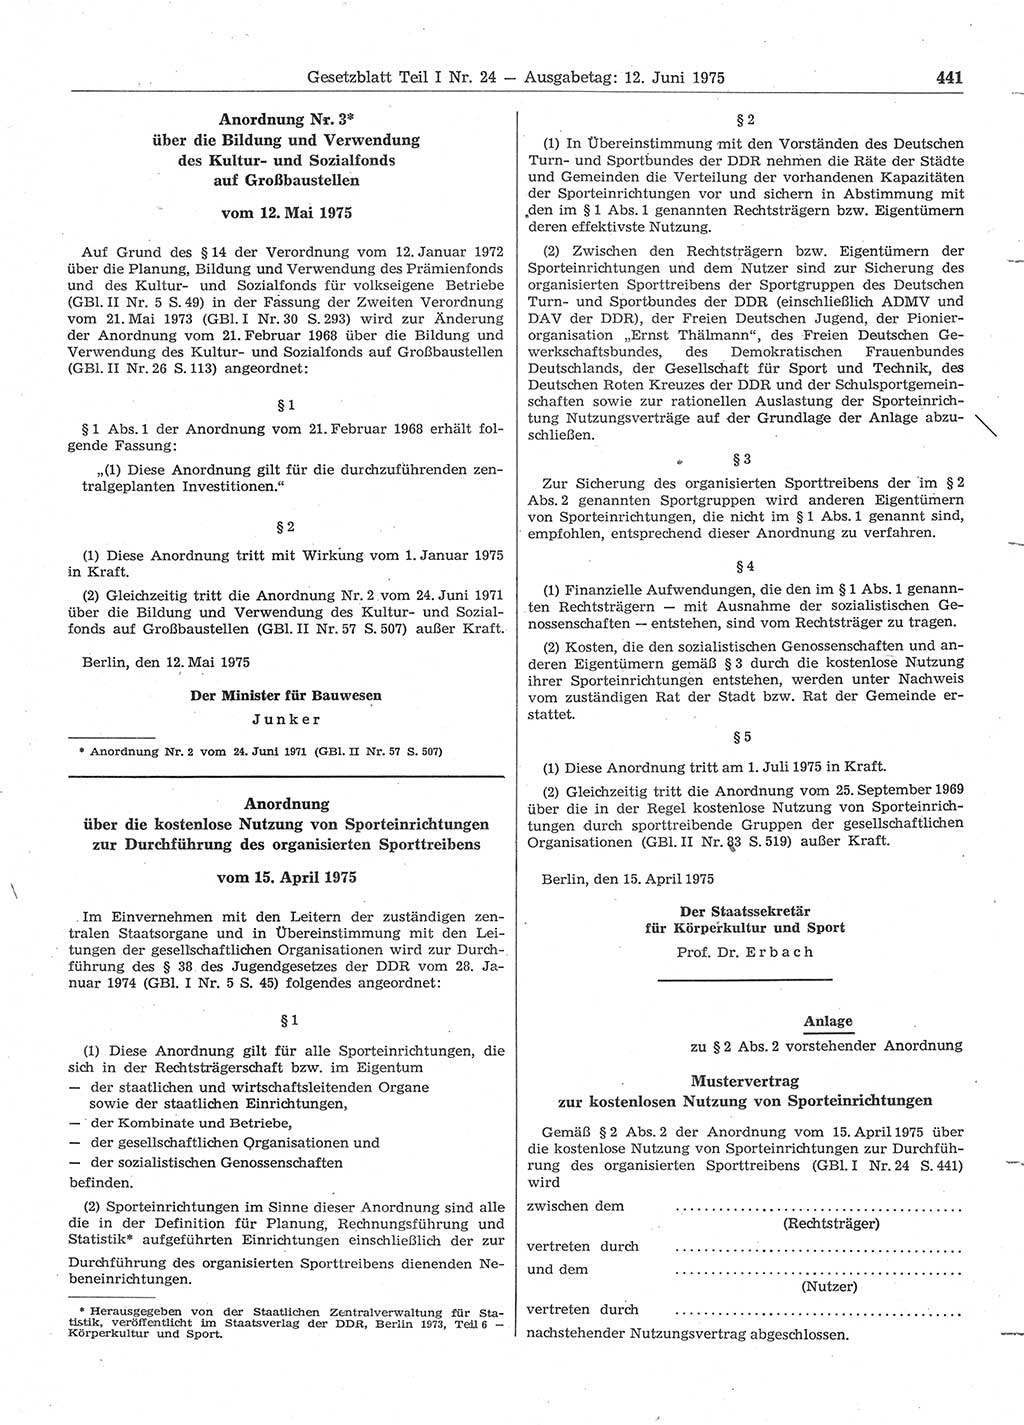 Gesetzblatt (GBl.) der Deutschen Demokratischen Republik (DDR) Teil Ⅰ 1975, Seite 441 (GBl. DDR Ⅰ 1975, S. 441)